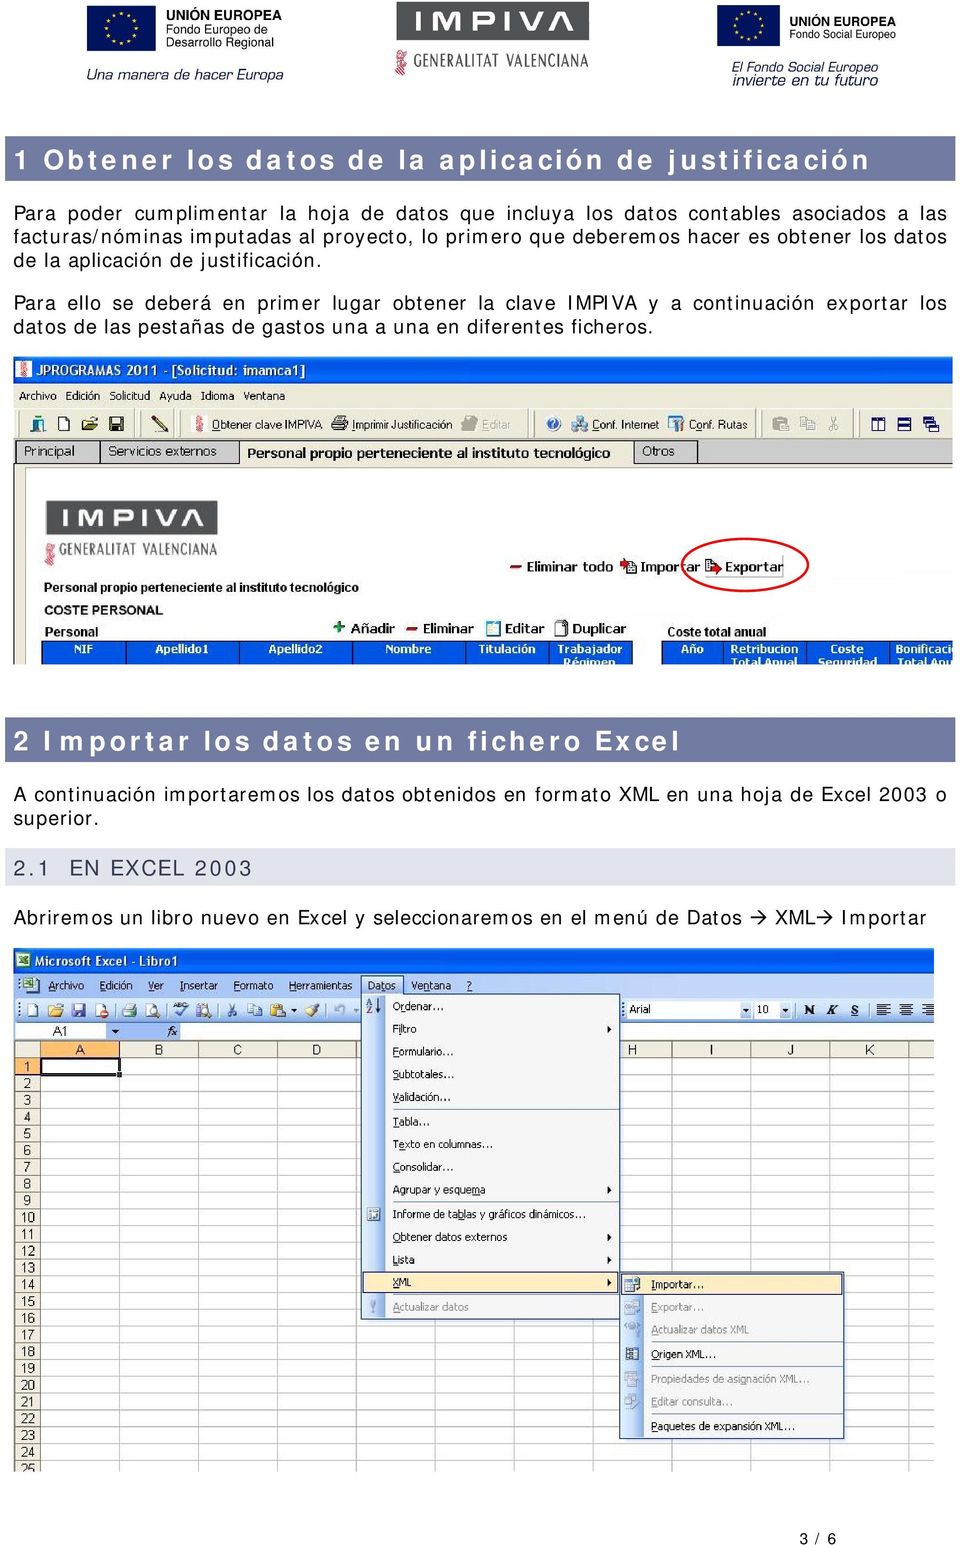 Para ello se deberá en primer lugar obtener la clave IMPIVA y a continuación exportar los datos de las pestañas de gastos una a una en diferentes ficheros.